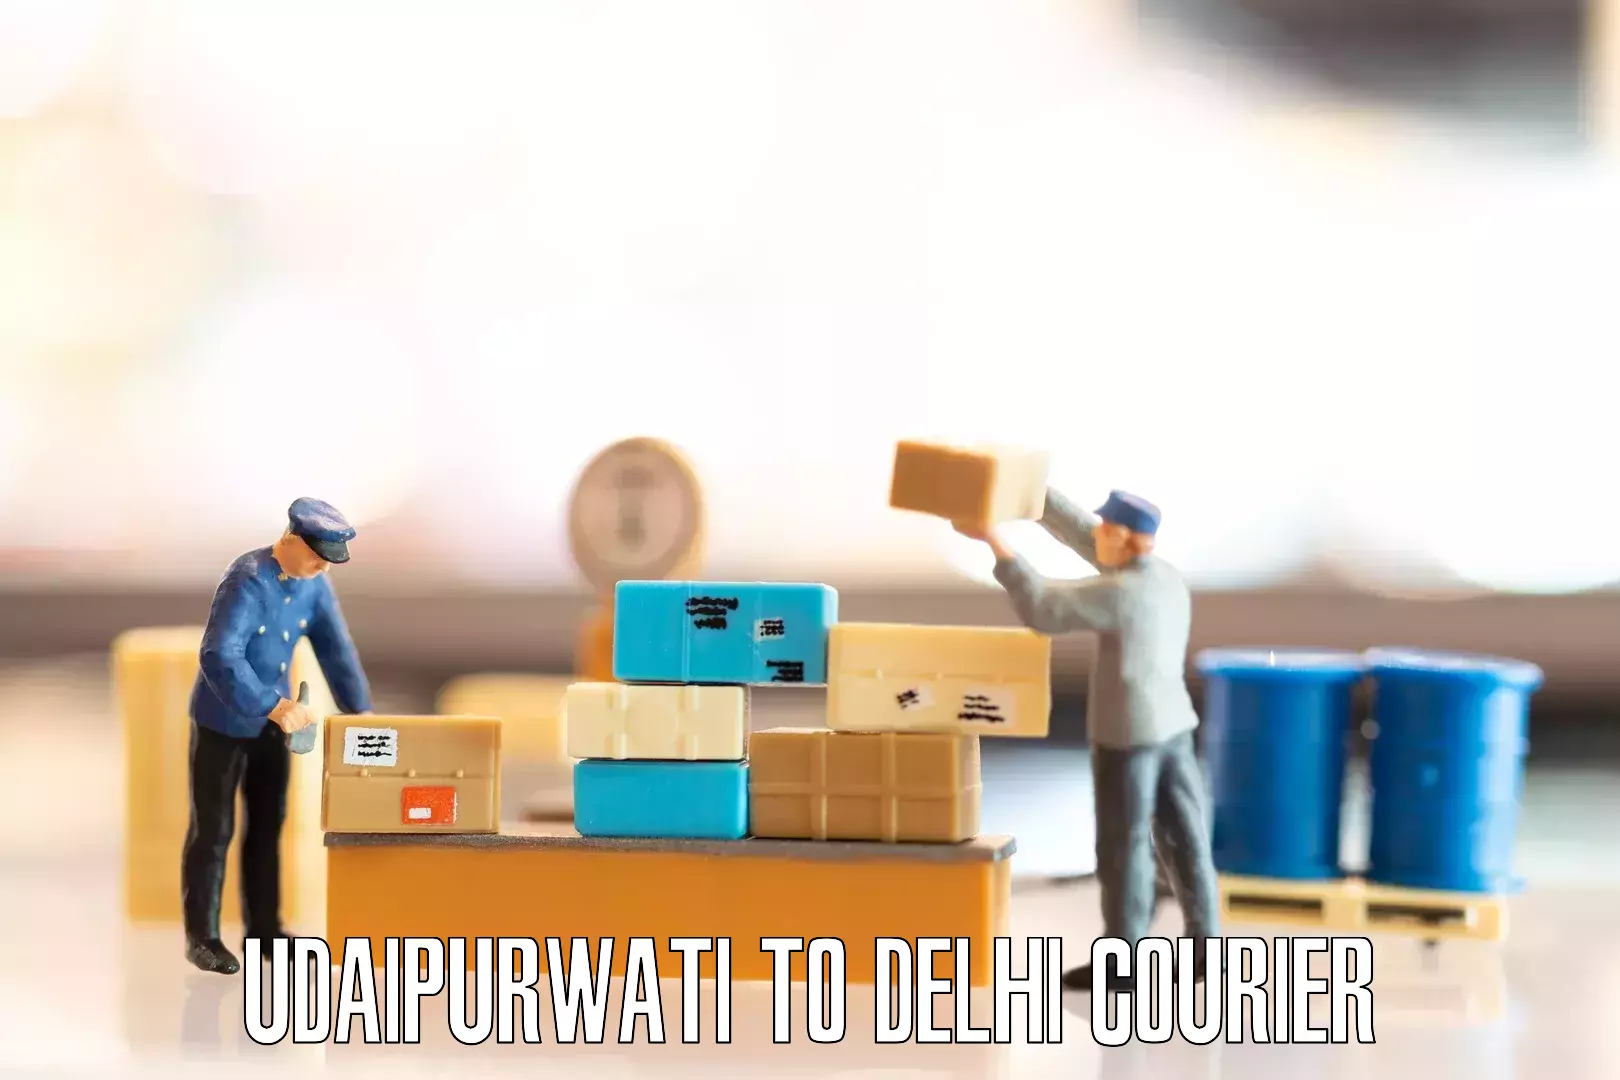 Furniture transport service Udaipurwati to IIT Delhi